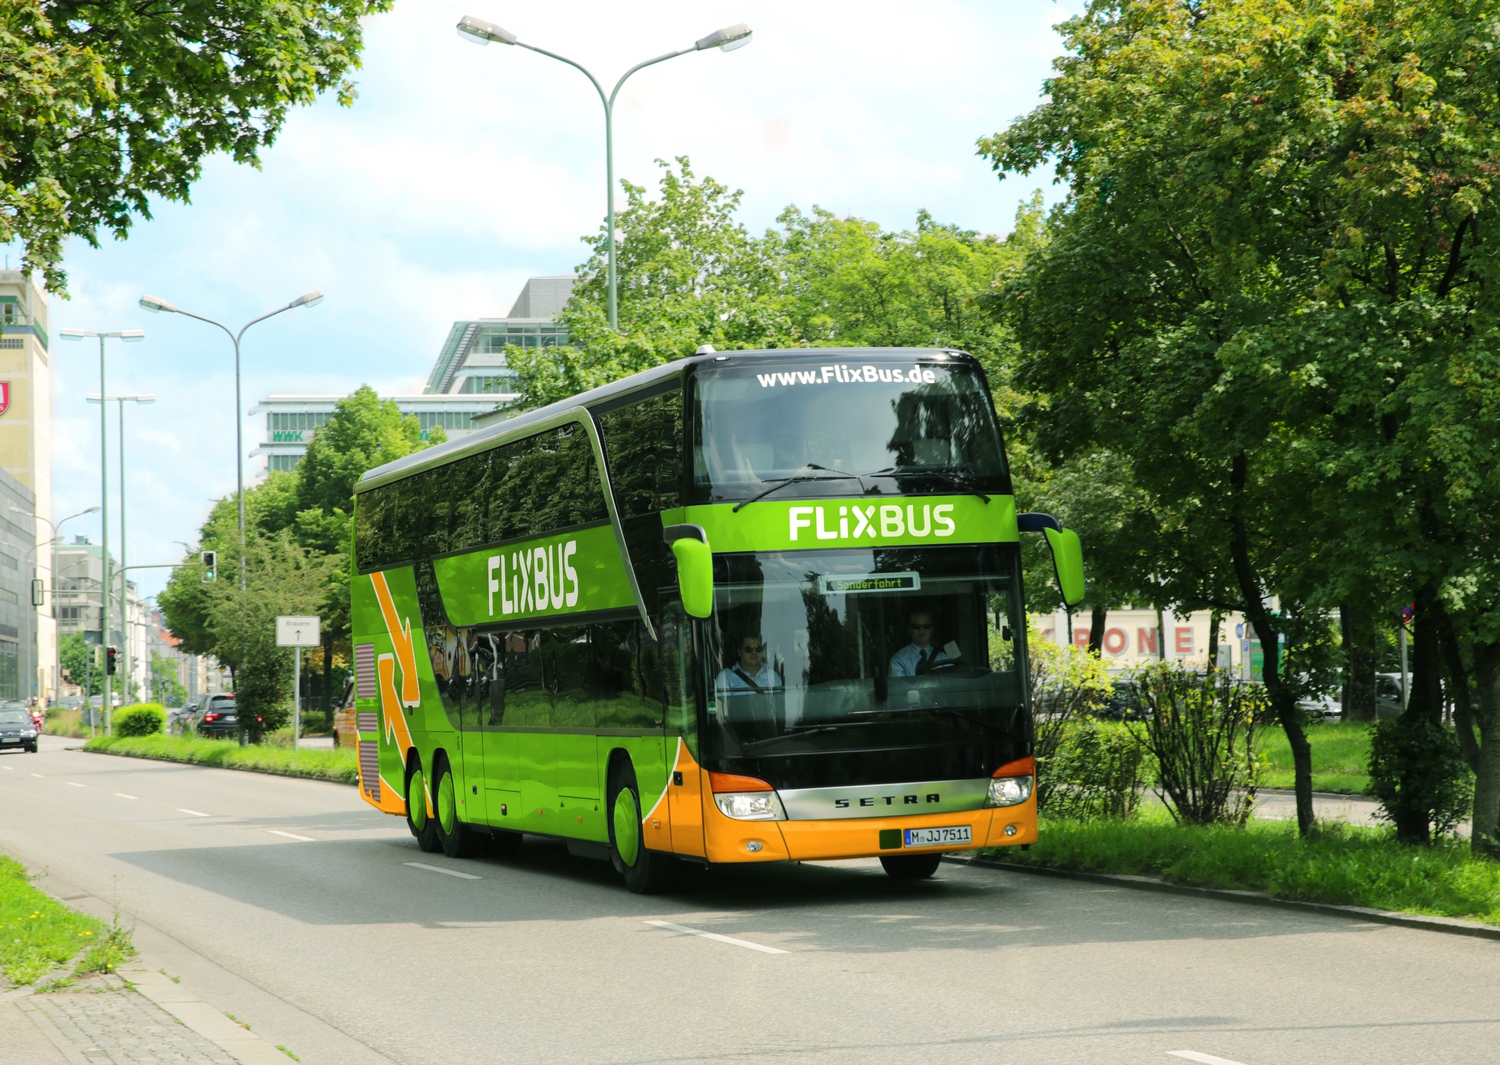 Новость - События - Сэкономишь на дороге: по каким маршрутам будут ездить автобусы FlixBus в Украине